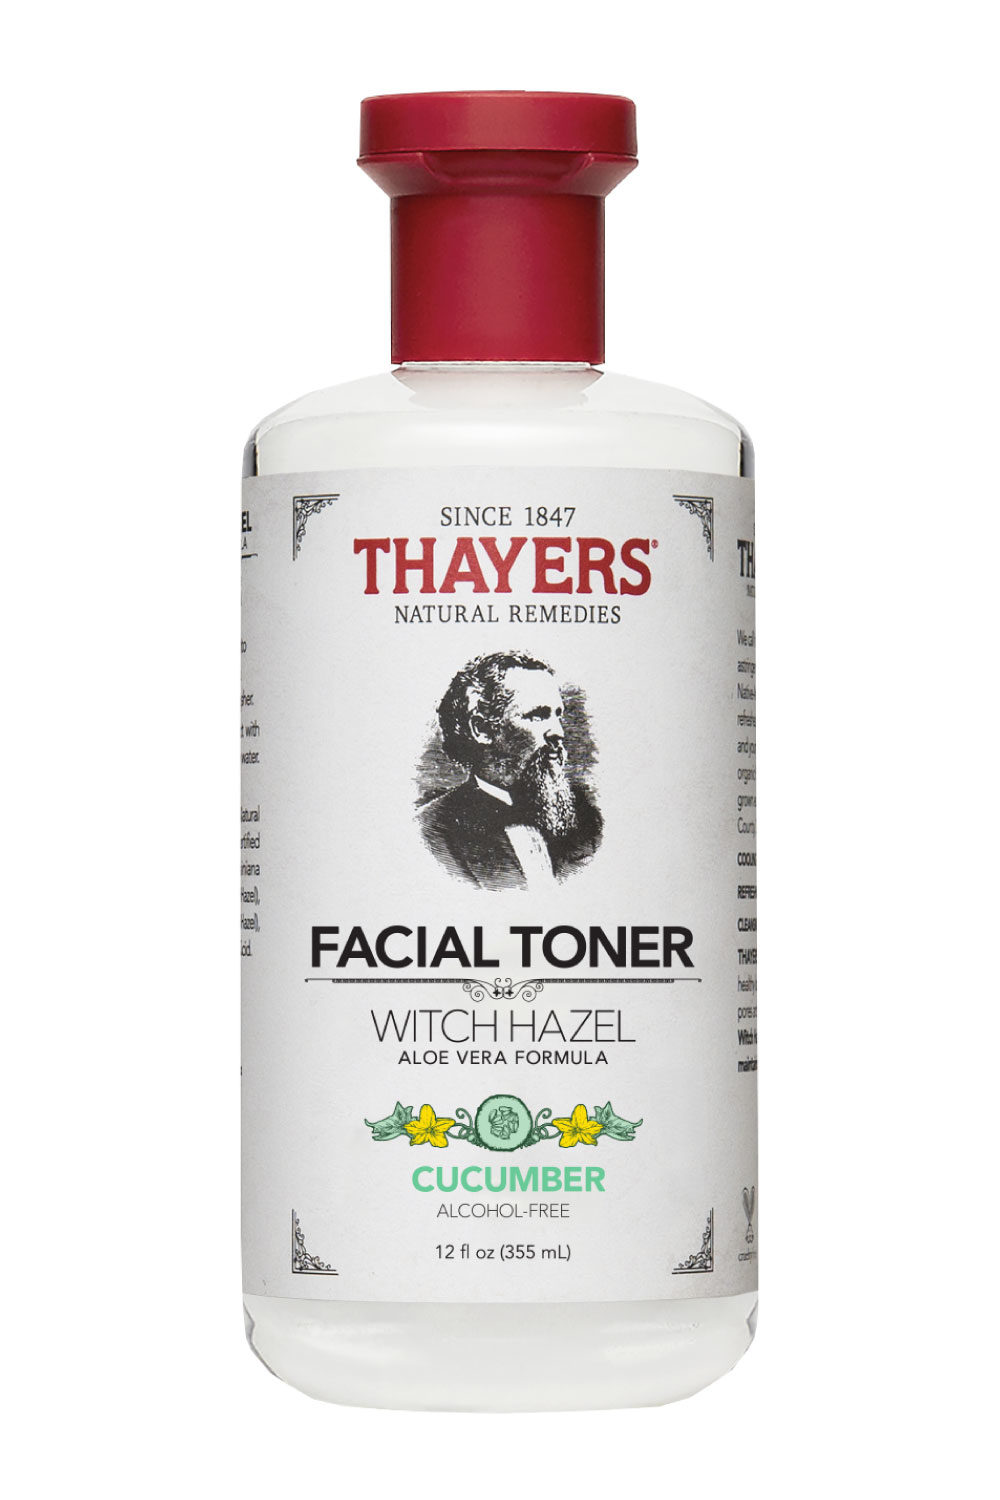 toner Thayers Witch Hazel Cucumber thanh phan my pham - Mất bao lâu để thành phần mỹ phẩm khởi tác dụng trên da?